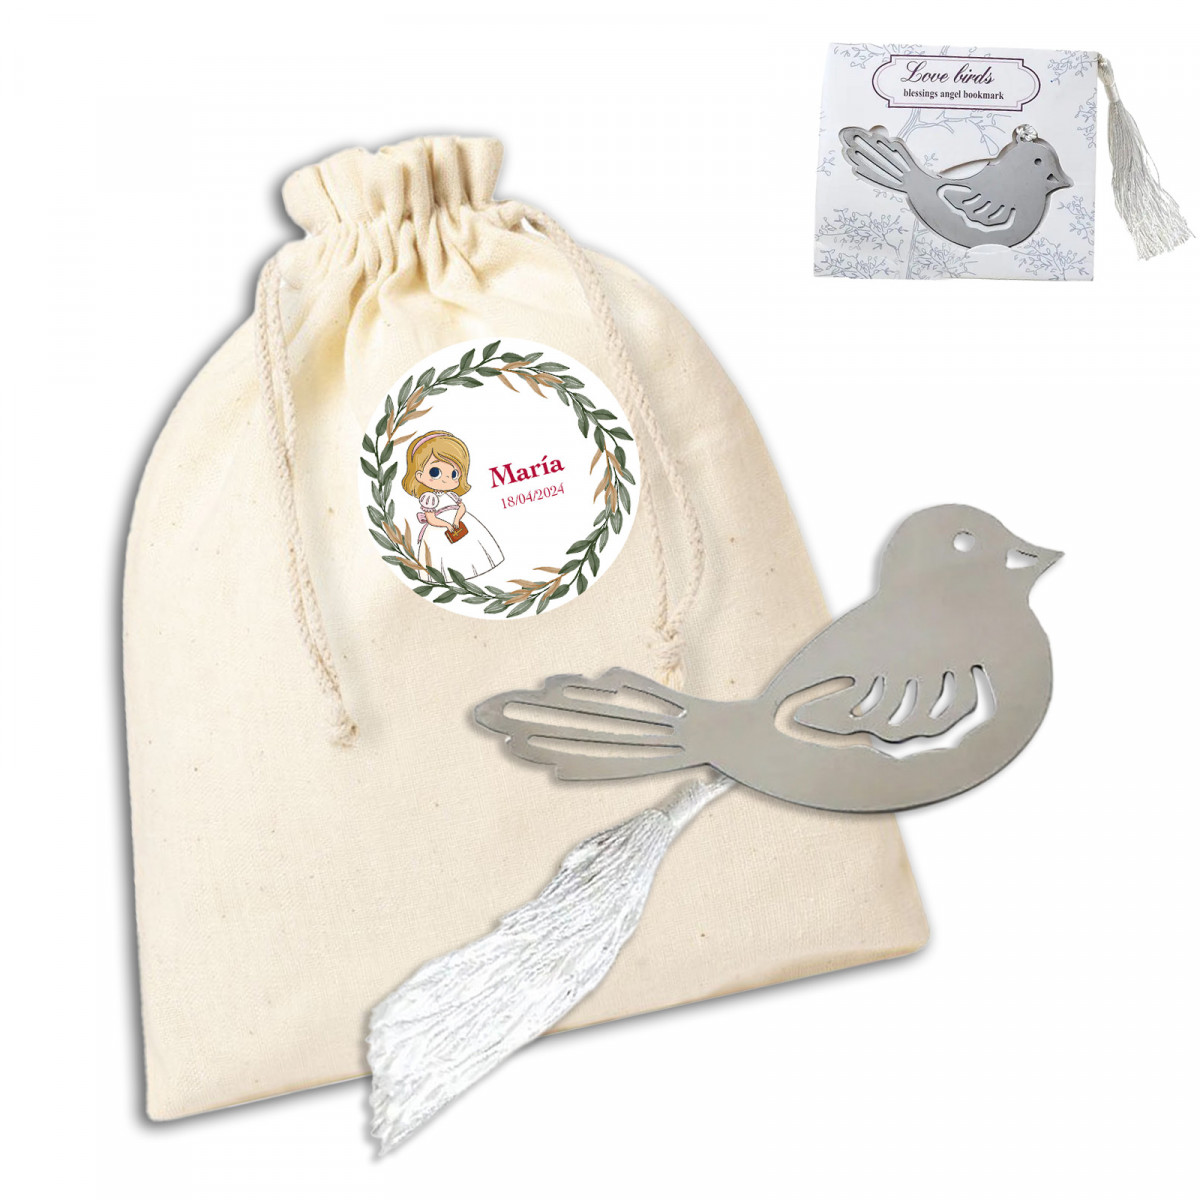 Ponta de página em forma de pássaro apresentada em saco branco personalizado para comunhão